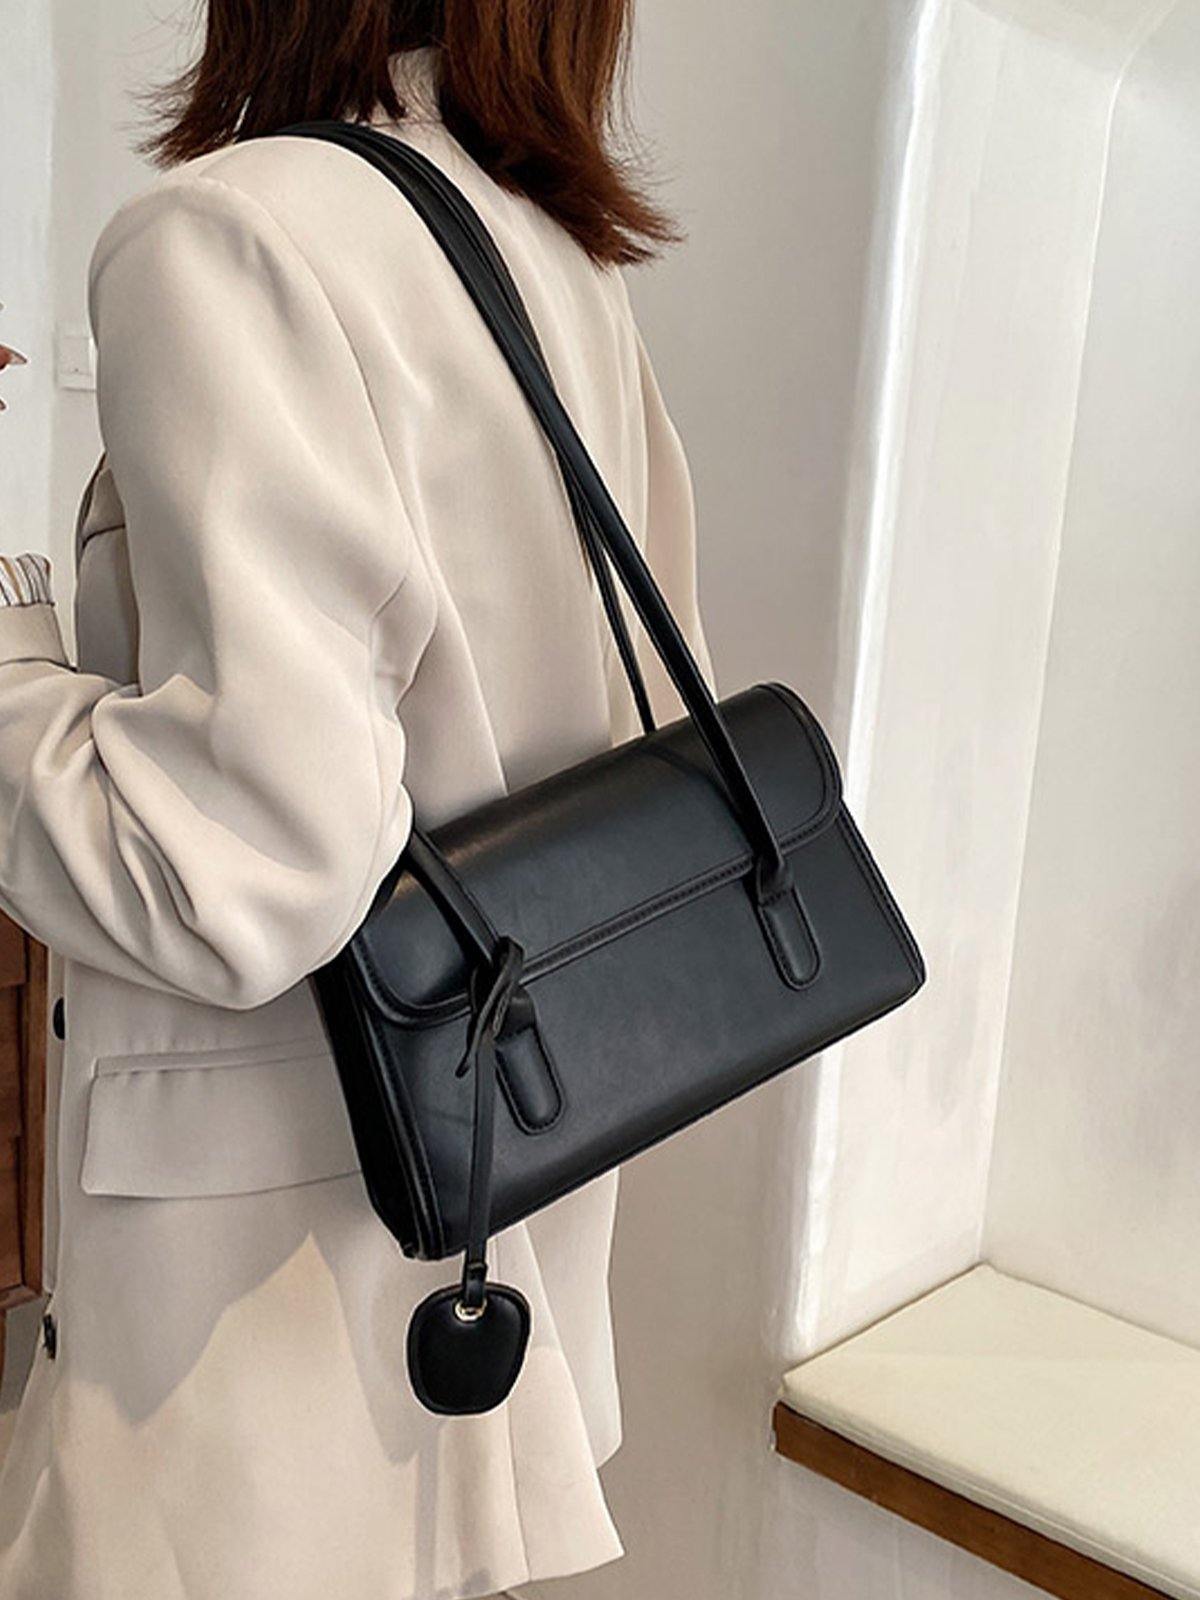 Fashion Shoulder Bag - Black